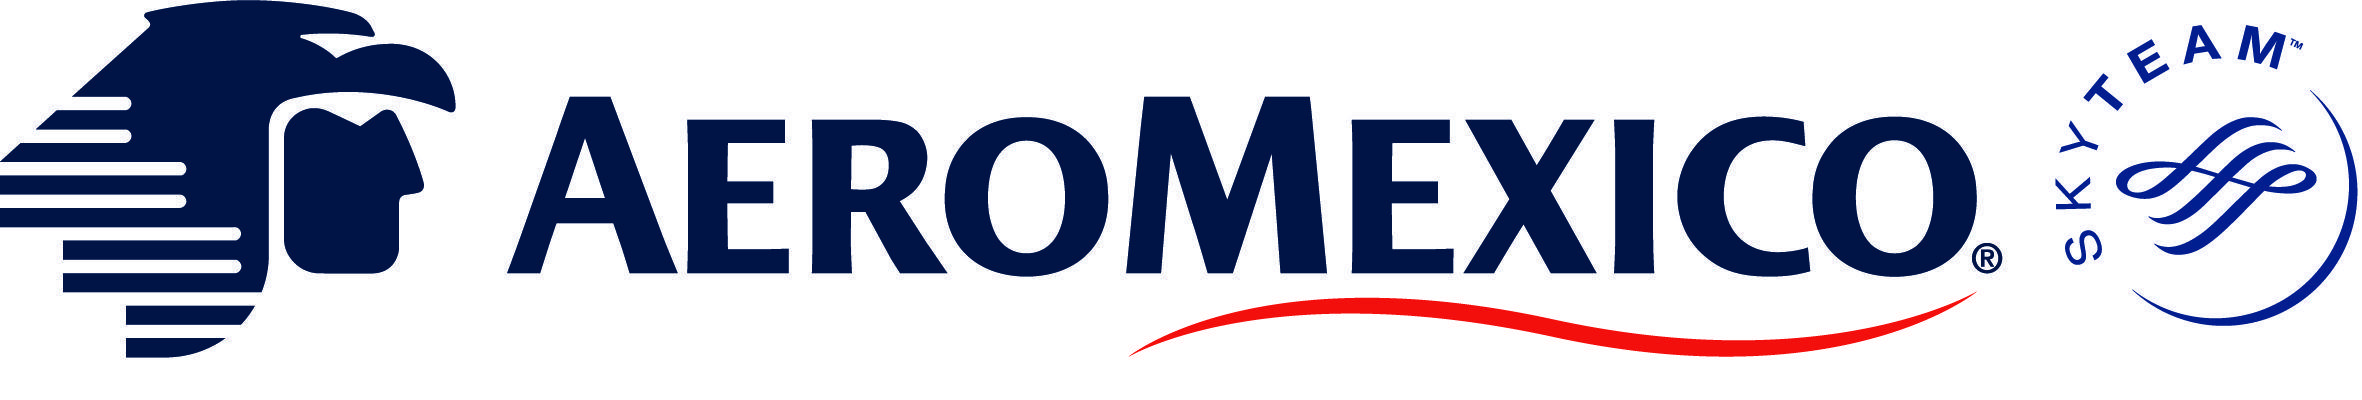 Aeromexico Logo - Aeromexico Logo PNG Transparent Aeromexico Logo.PNG Images. | PlusPNG